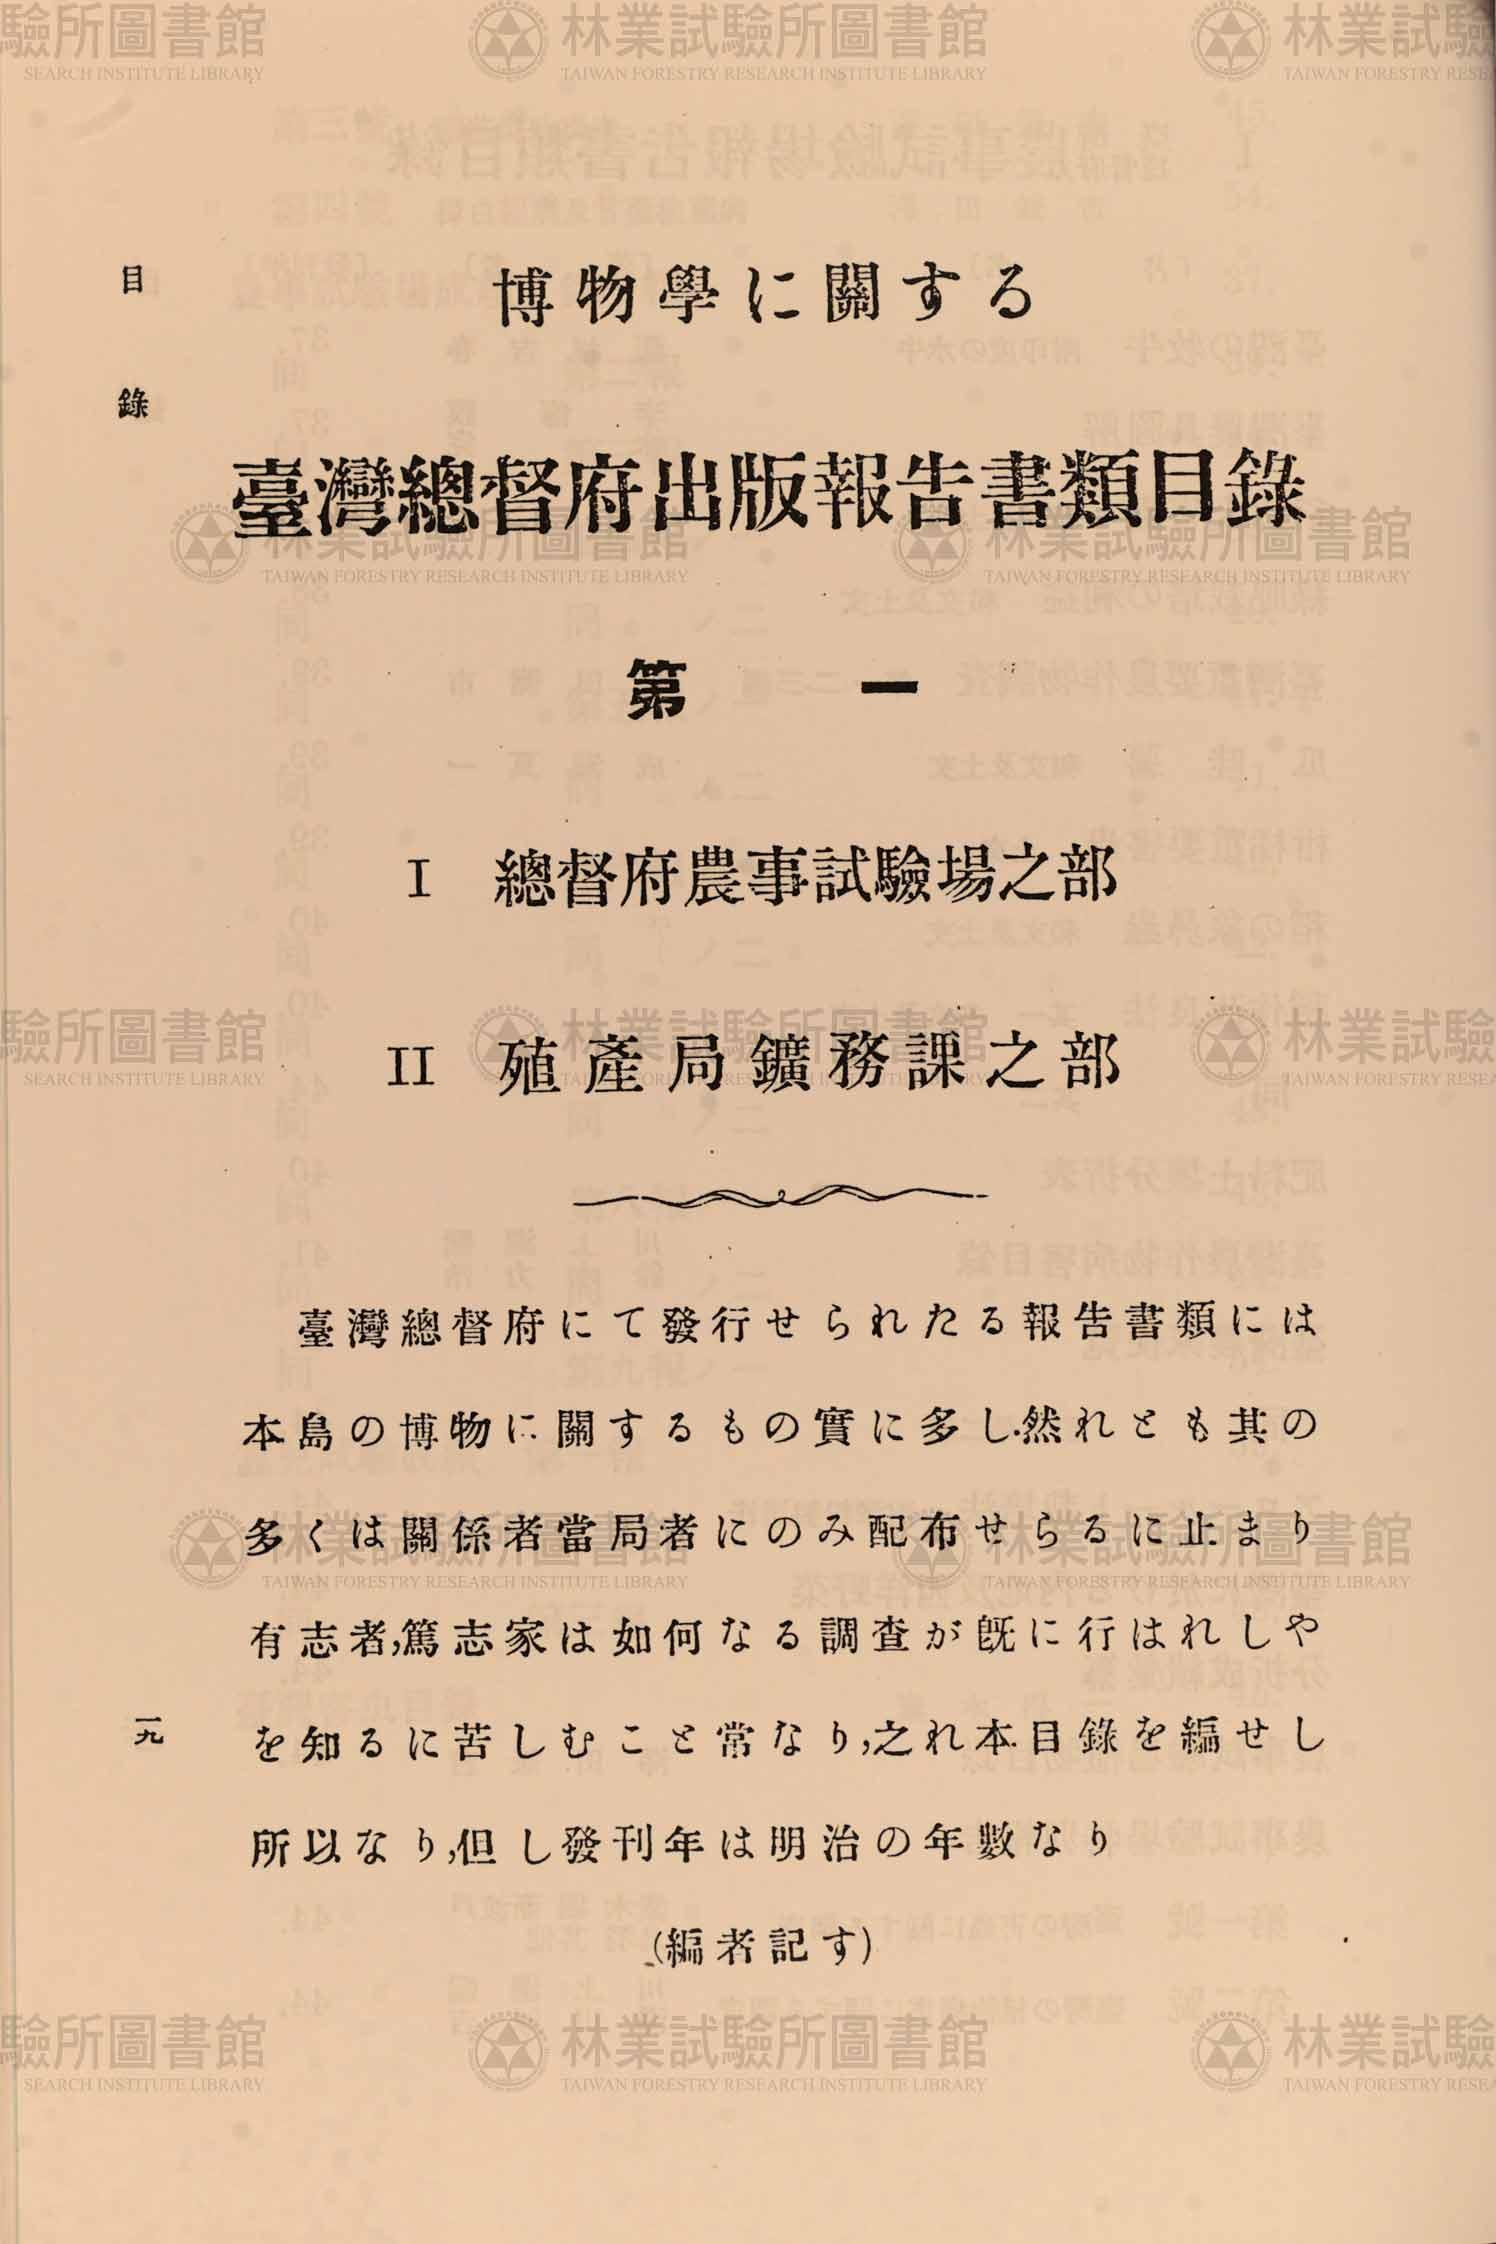 篇名:博物學に關する臺灣總督府出版報告書類目錄〈第一〉農業試驗場、鑛務課